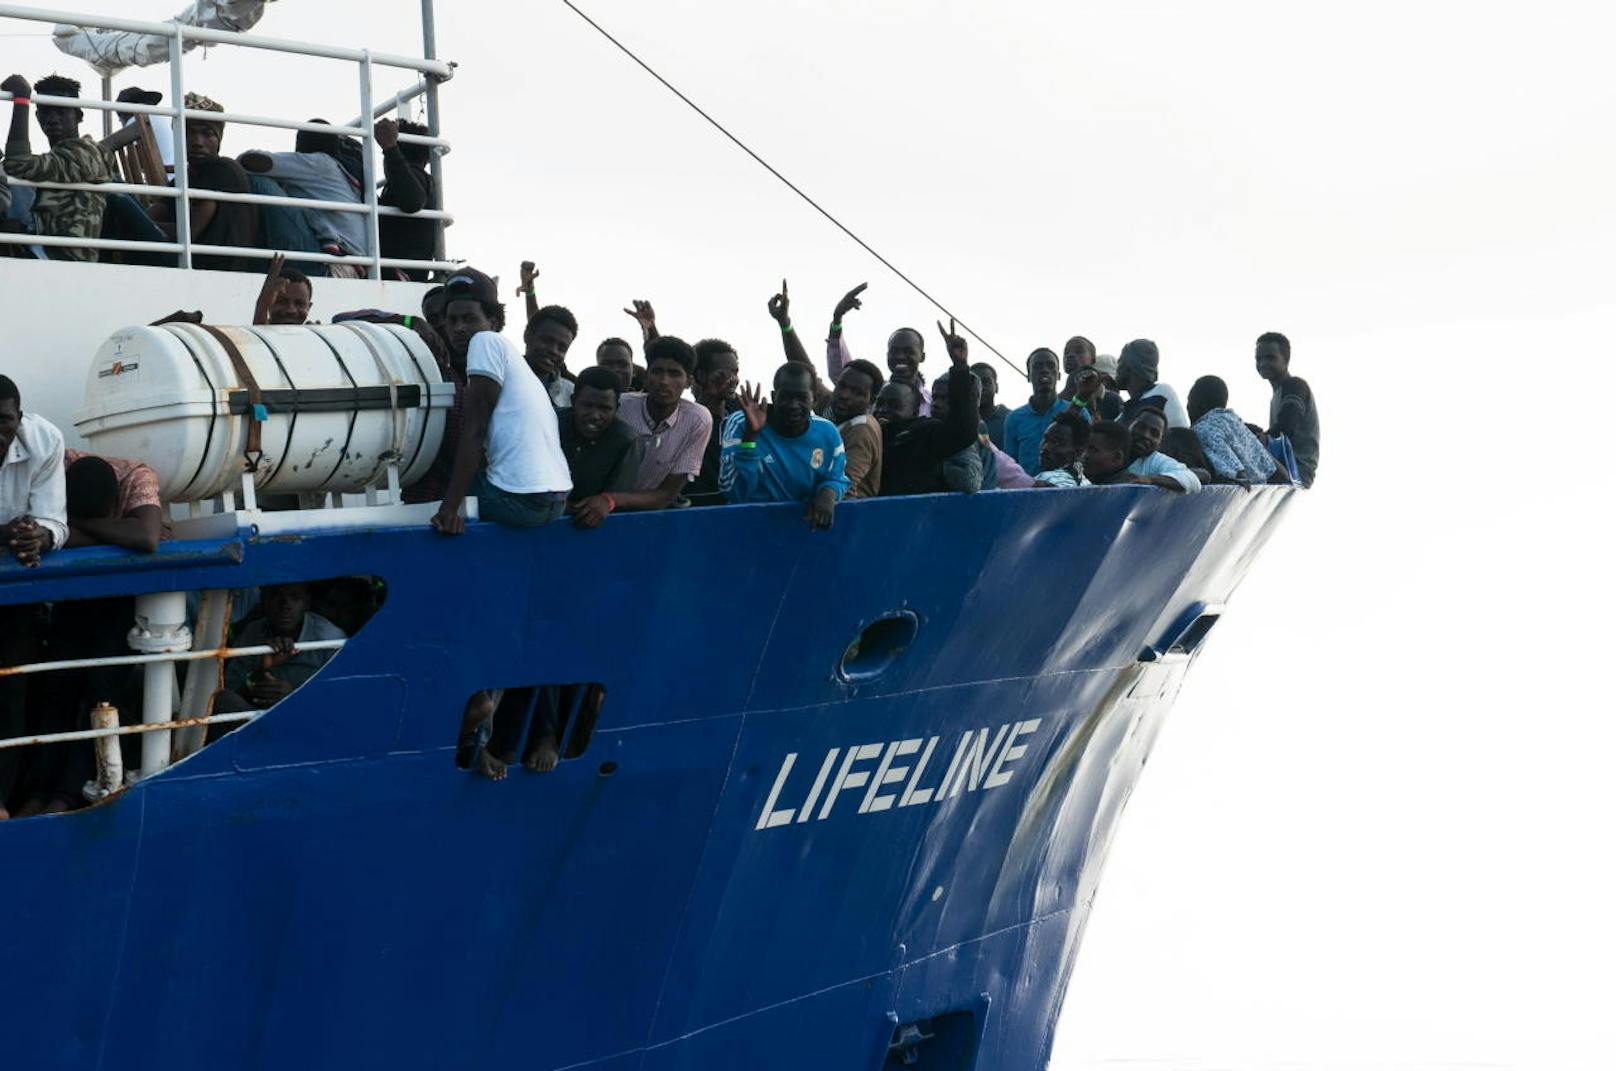 Die Hilfsorganisation Mission Lifeline rettet im Mittelmeer schiffbrüchige Flüchtlinge und ist umstritten.